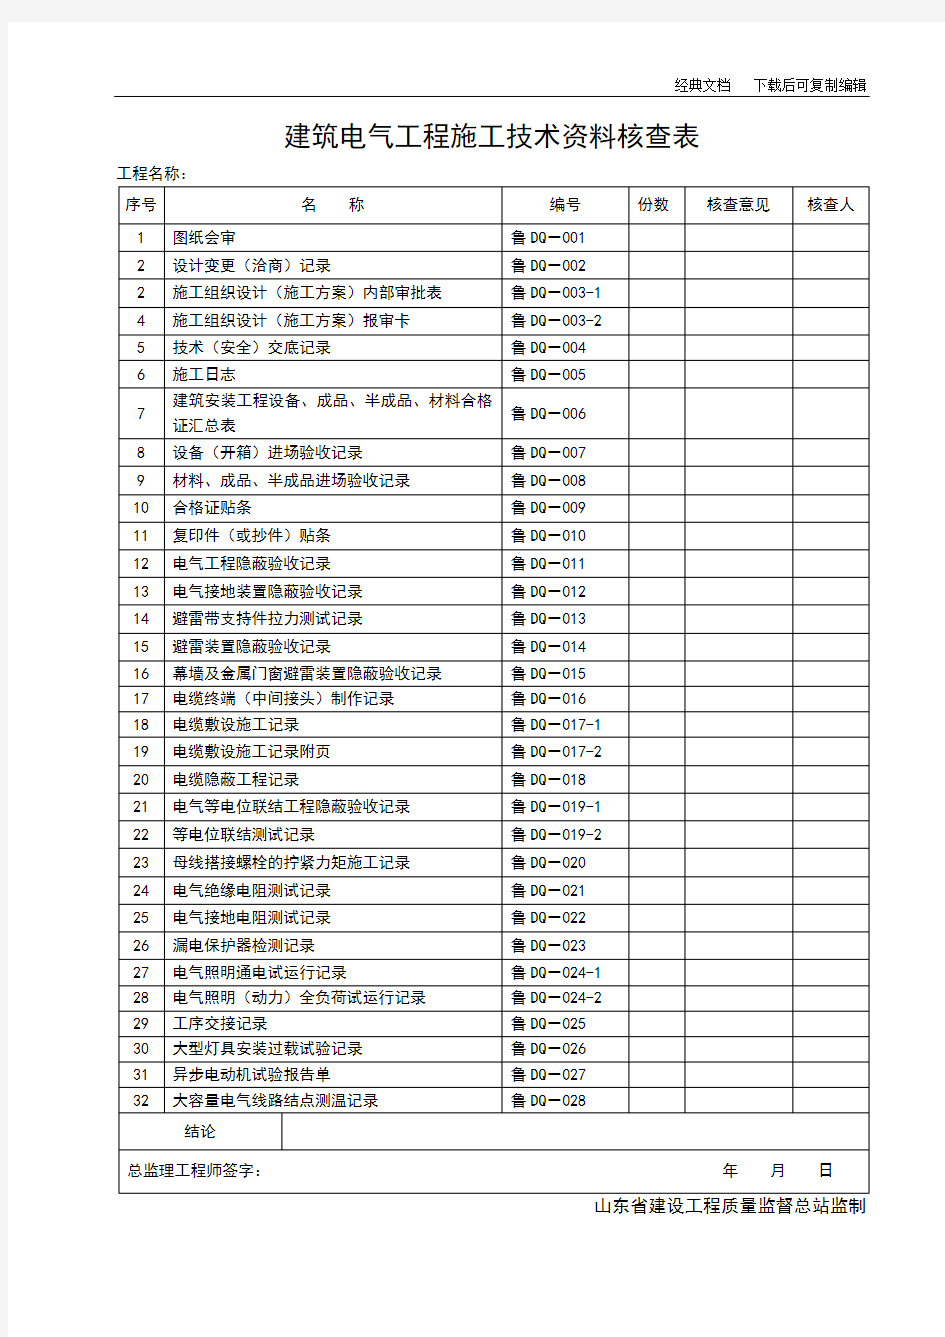 山东省建筑工程施工技术资料管理规程表格(597张) (1)